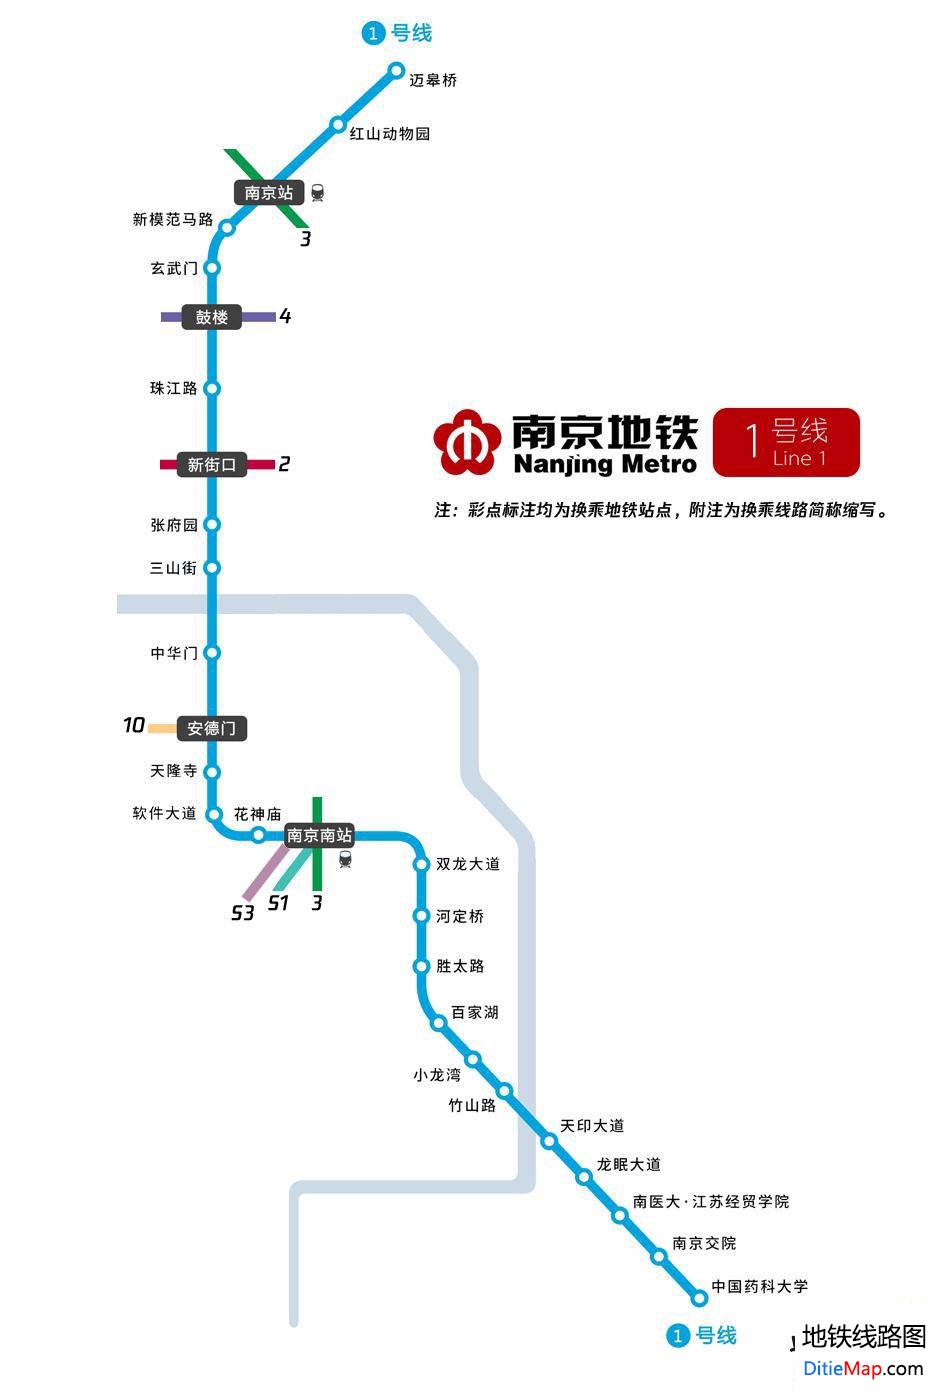 南京地铁1号线线路图 南京地铁1号线 南京地铁一号线 南京地铁线路图